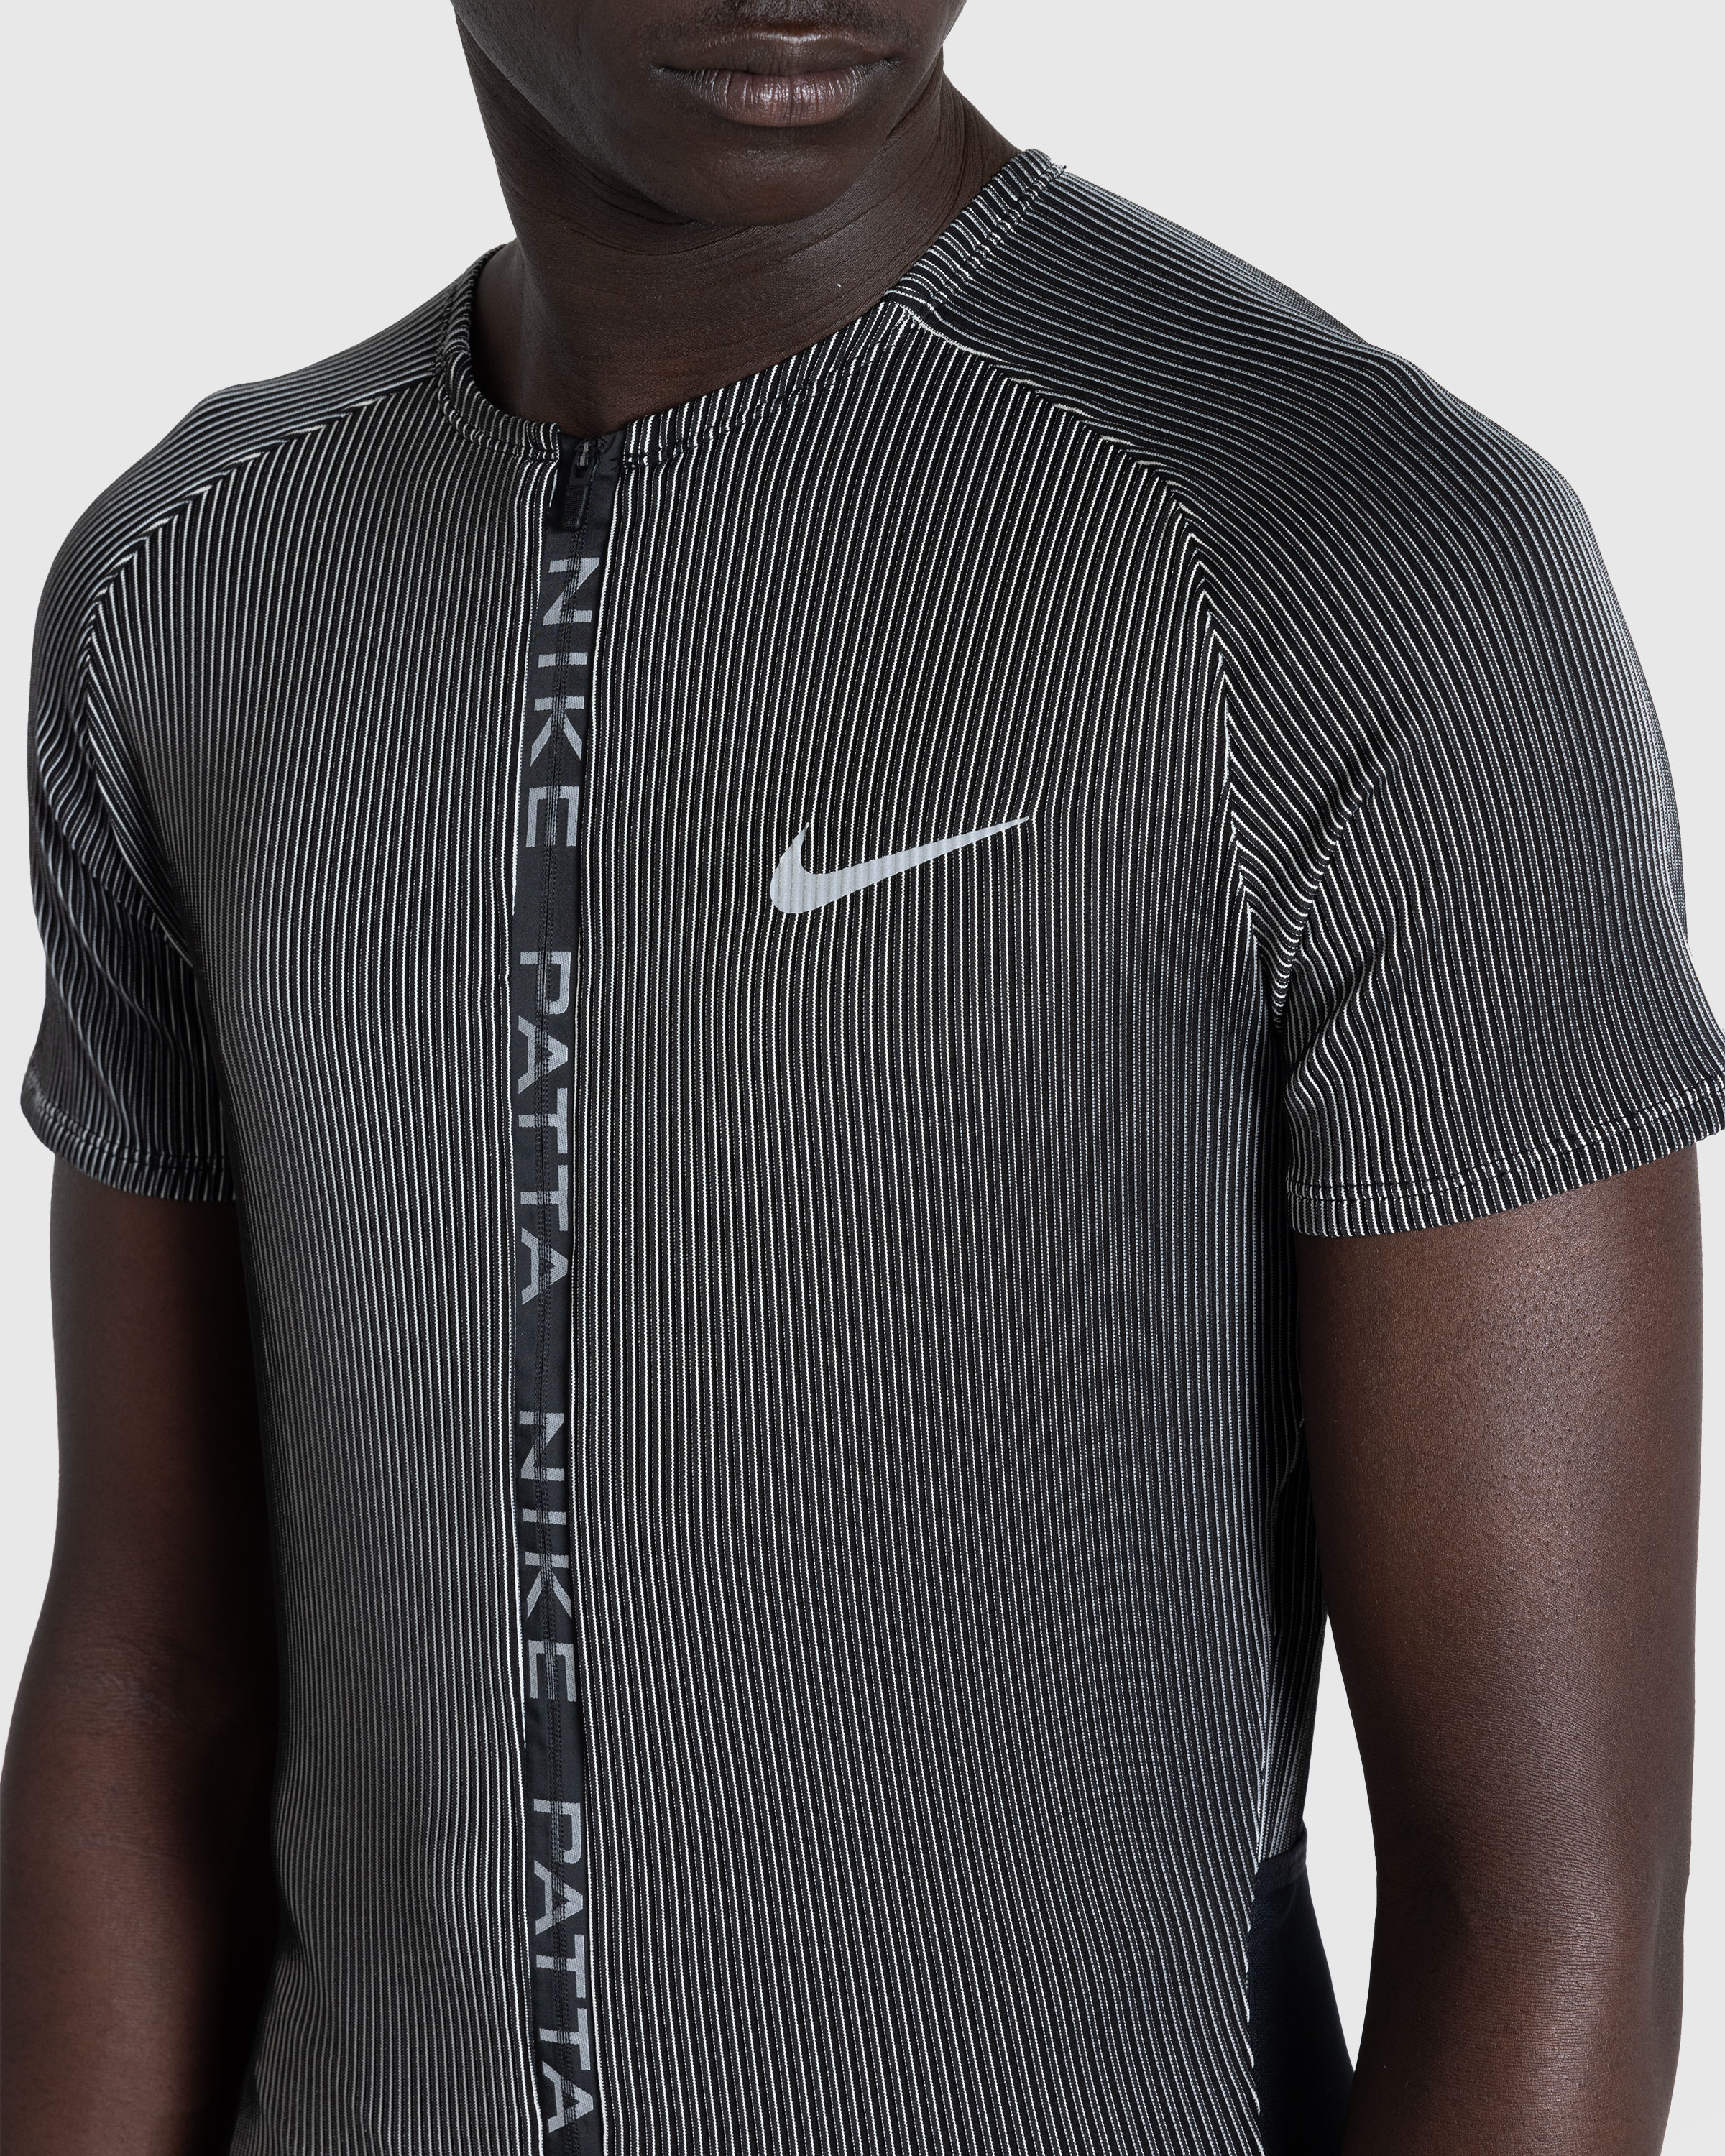 Nike x Patta – U NRG Nike x Patta Race Suit Black - Overshirt - Black - Image 5